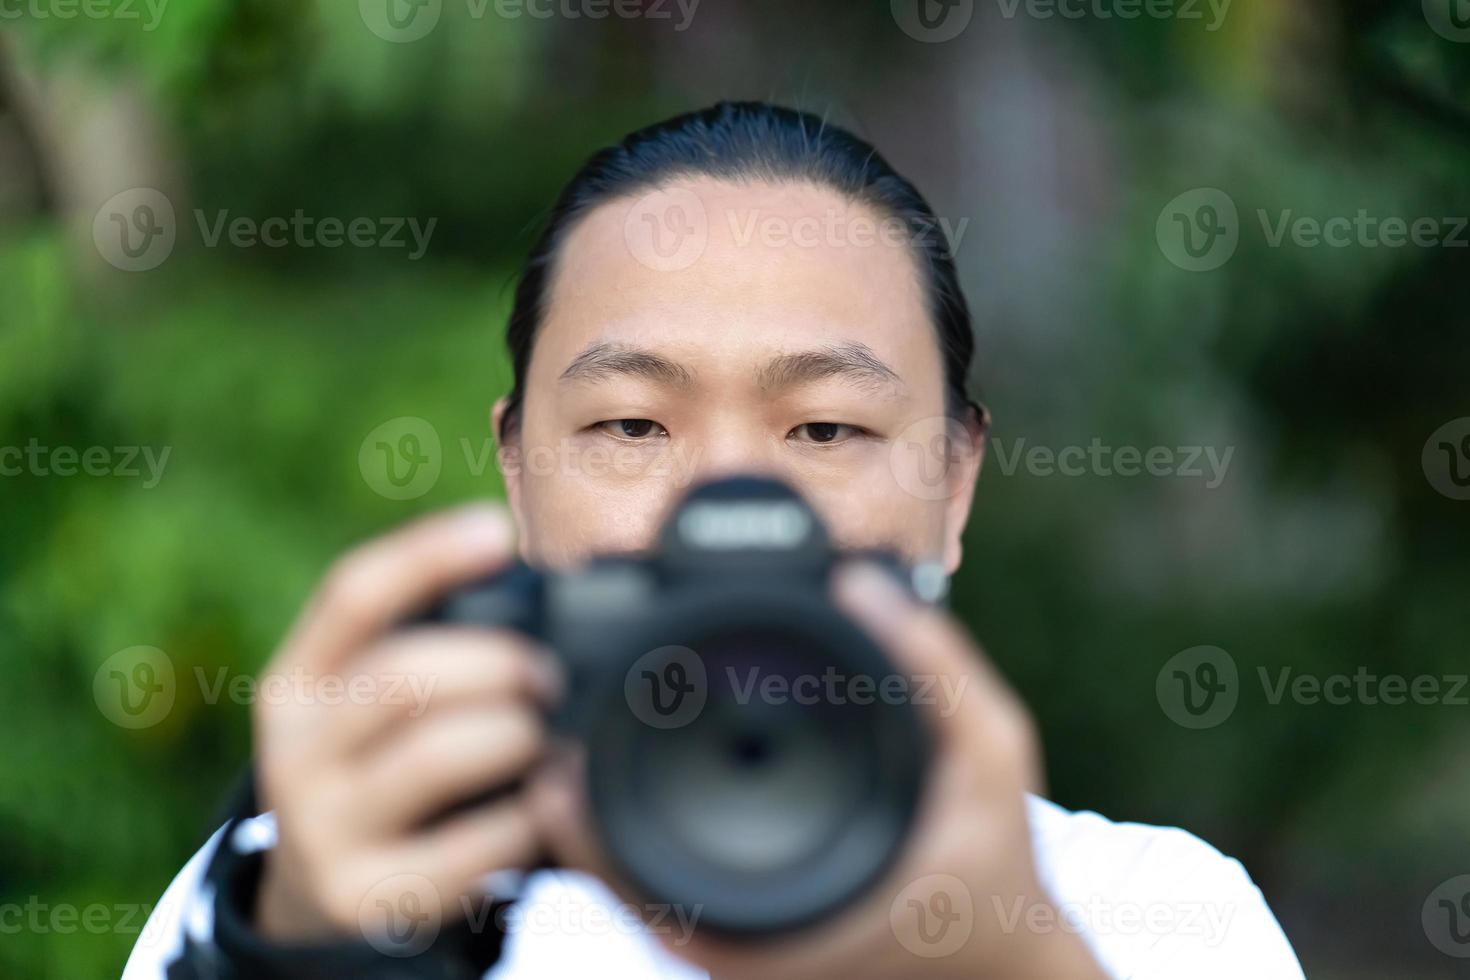 concentre-se no rosto do homem asiático que ele segura a câmera de médio formato desfocada na mão e prepare-se para atirar na frente dele. foto